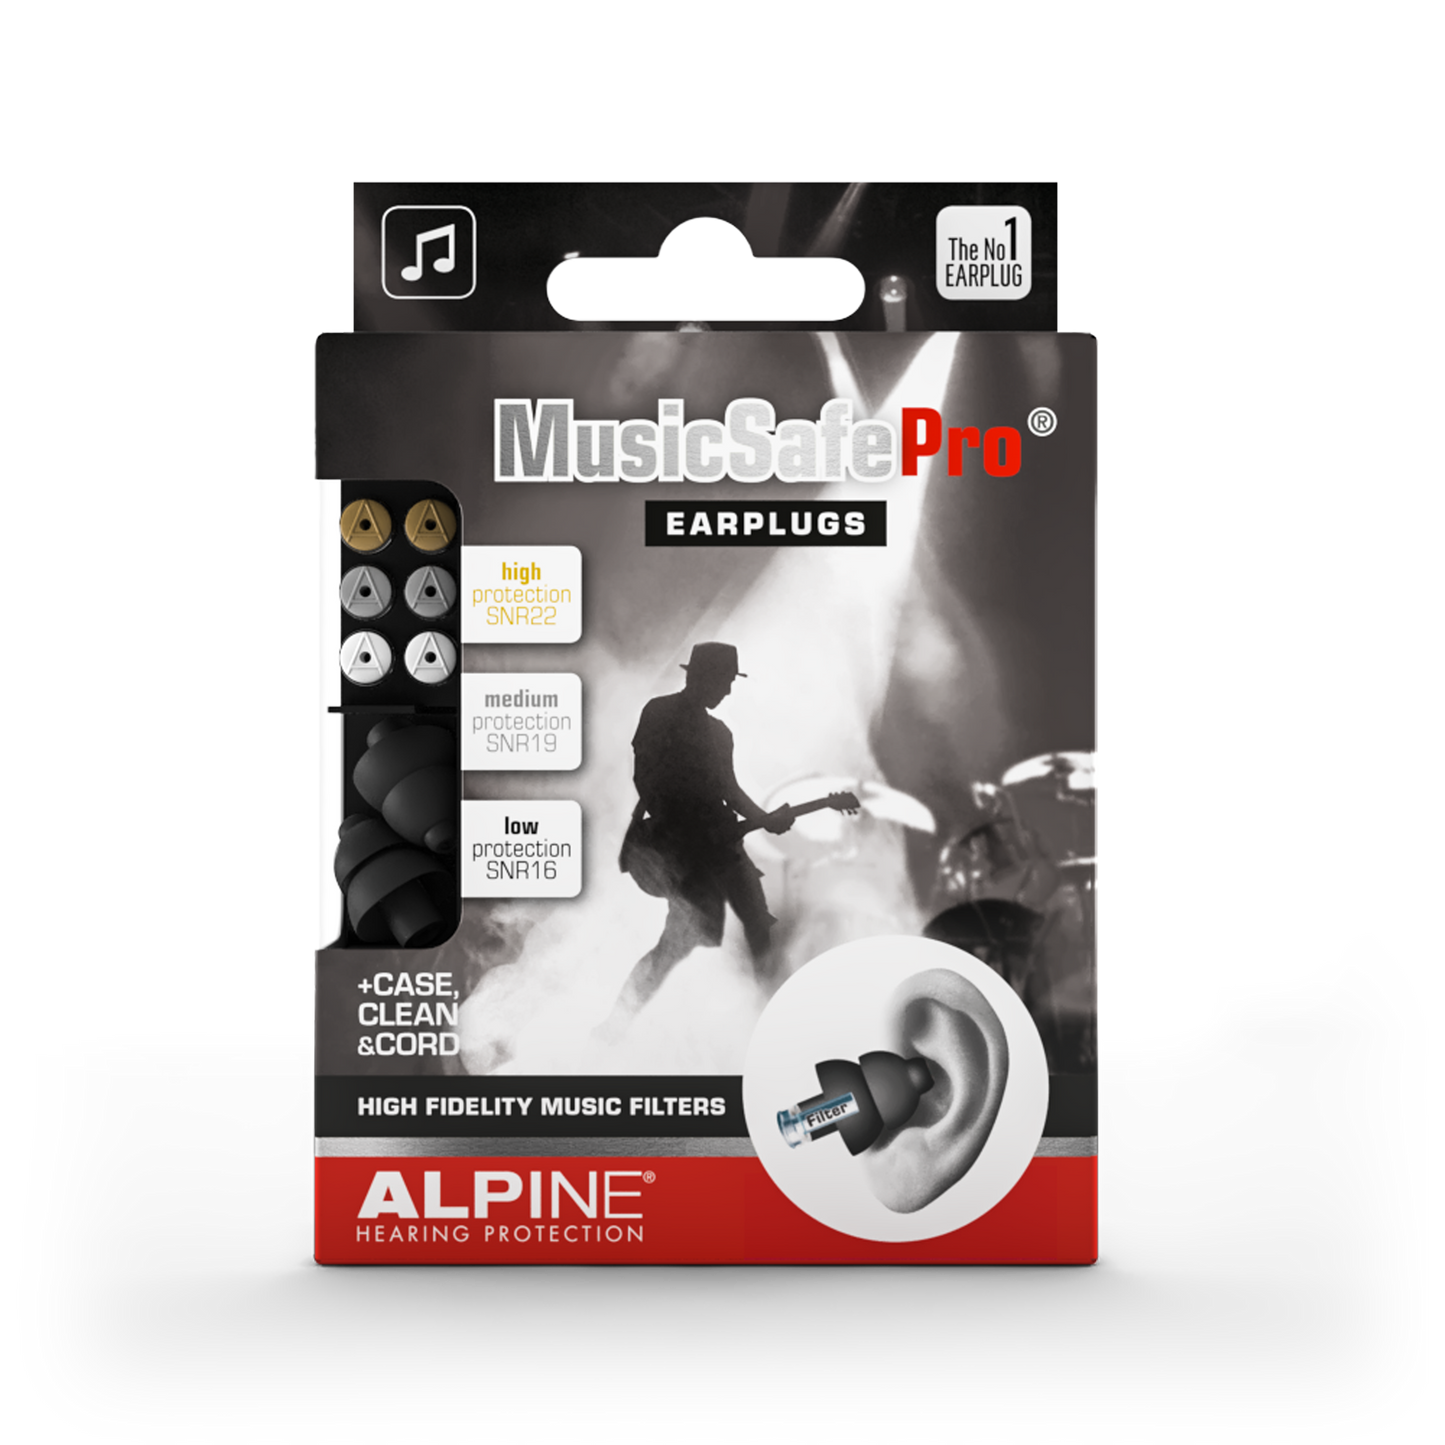 Alpine MusicSafe Pro oordoppen voor muzikanten, DJ's en producers